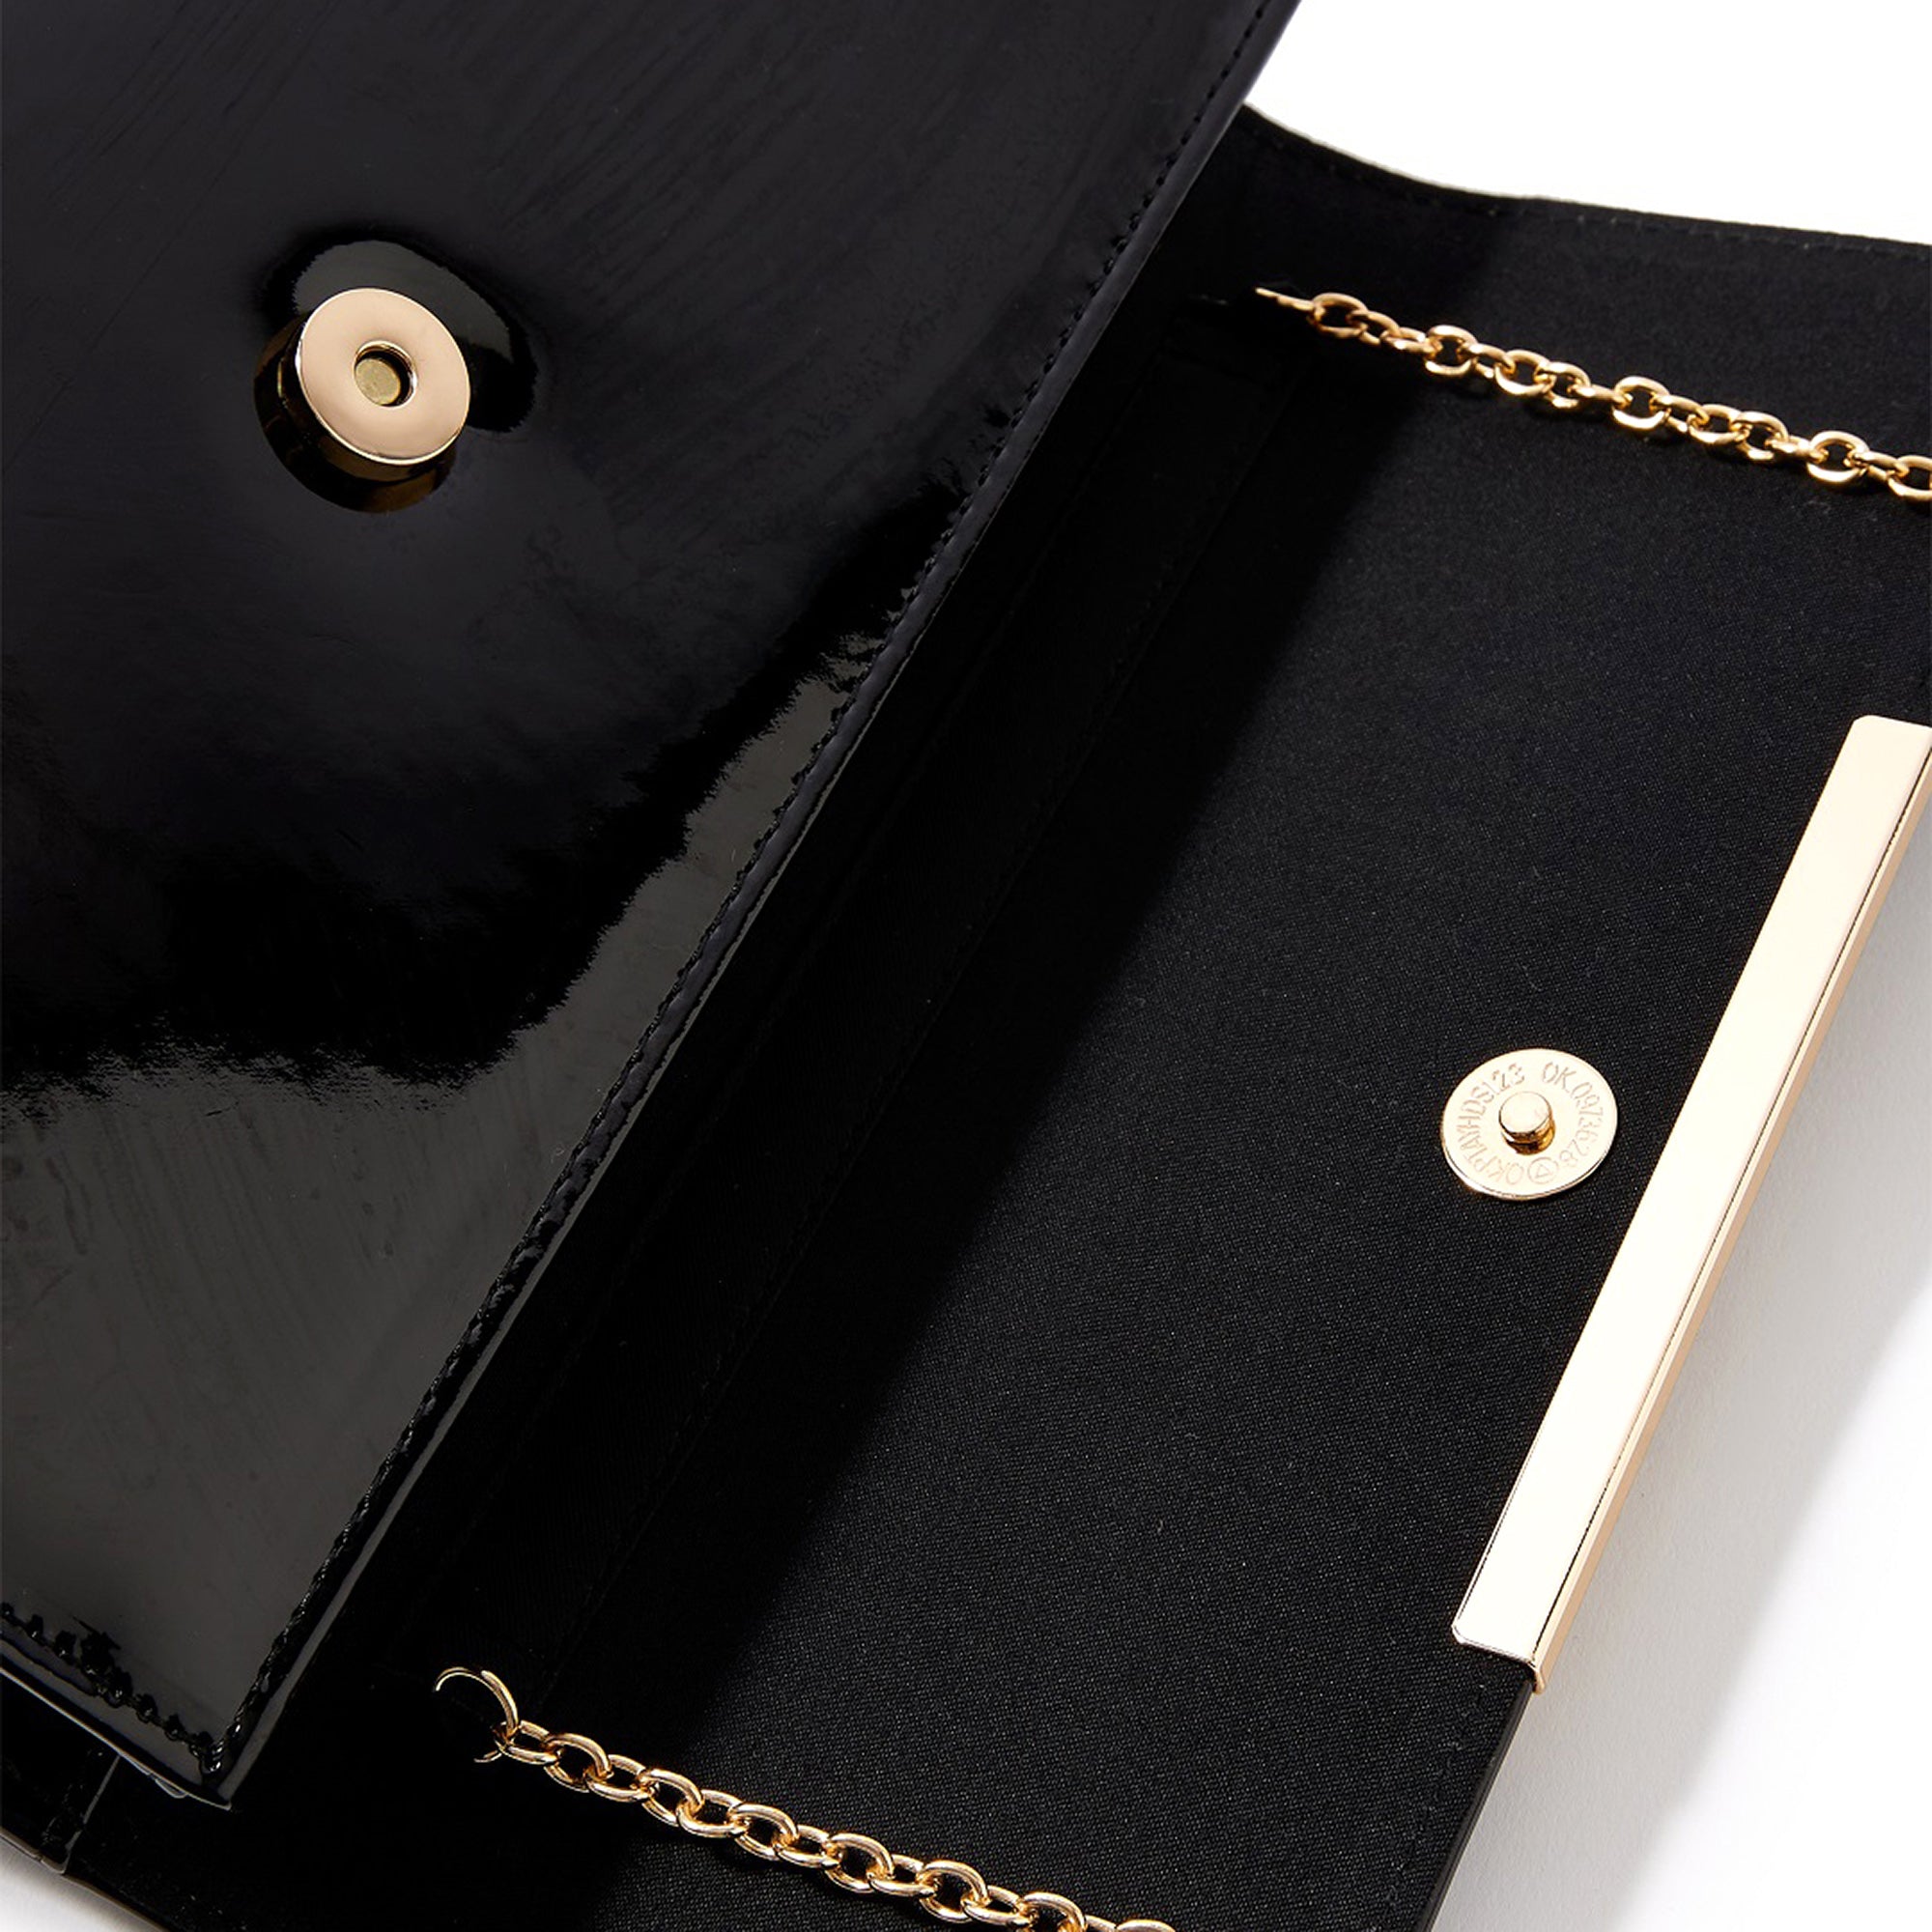 Accessorize London Women's Faux Leather Black Patent Clutch Party Bag